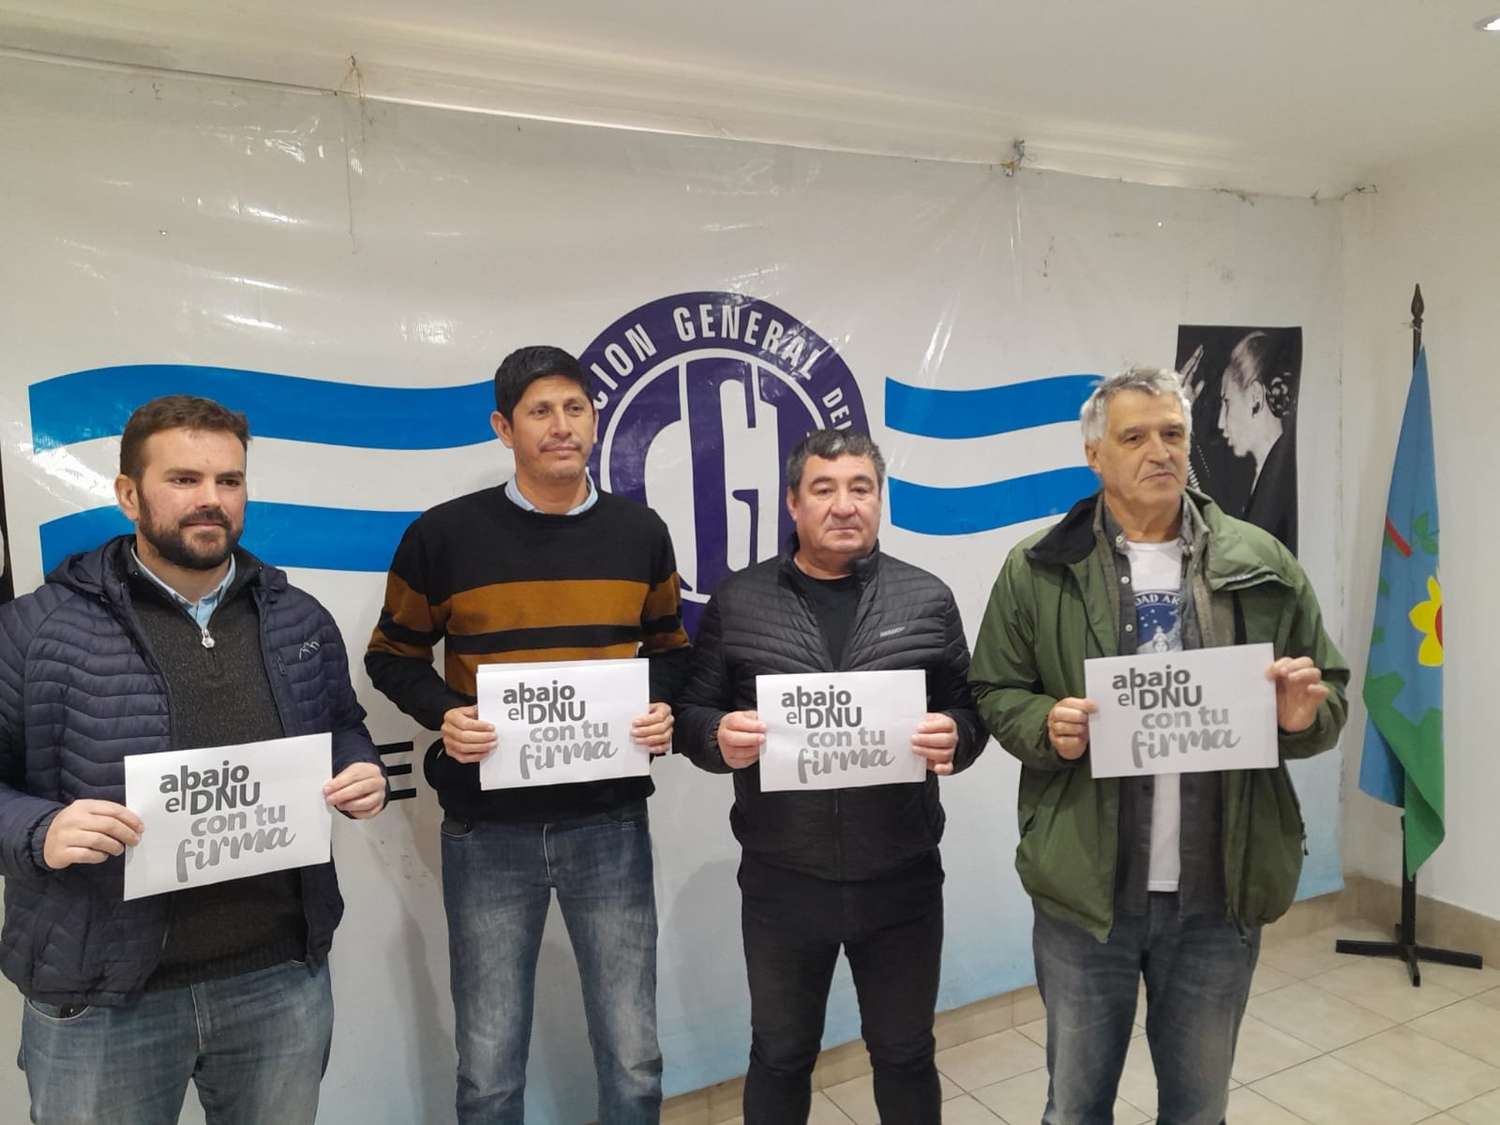 Se lanzó en Mar del Plata la campaña nacional "Un millón de firmas contra el DNU"